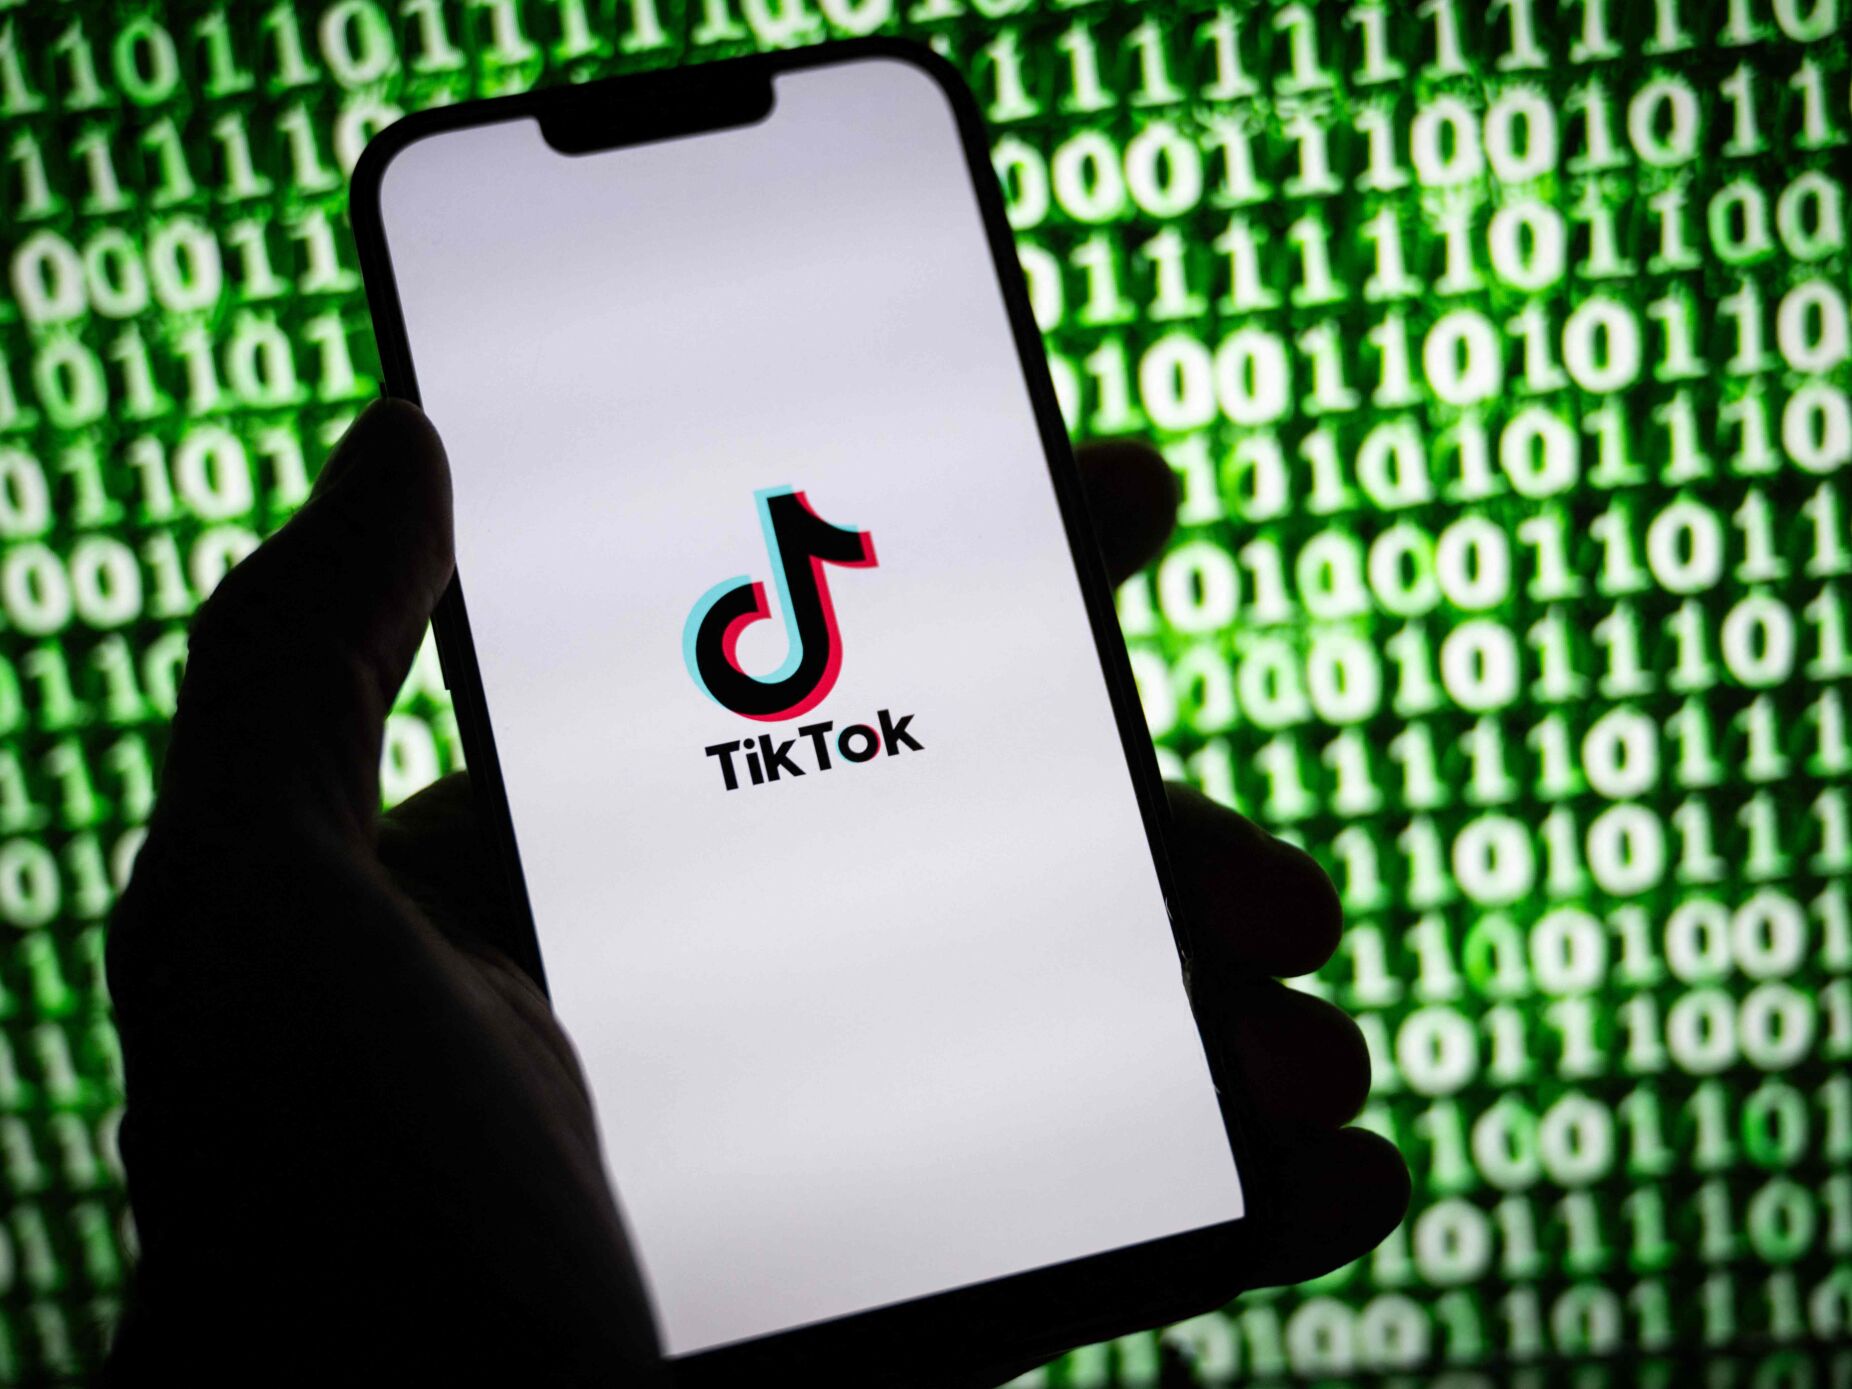 Empresa chinesa sem planos para vender TikTok apesar de ultimato dos EUA